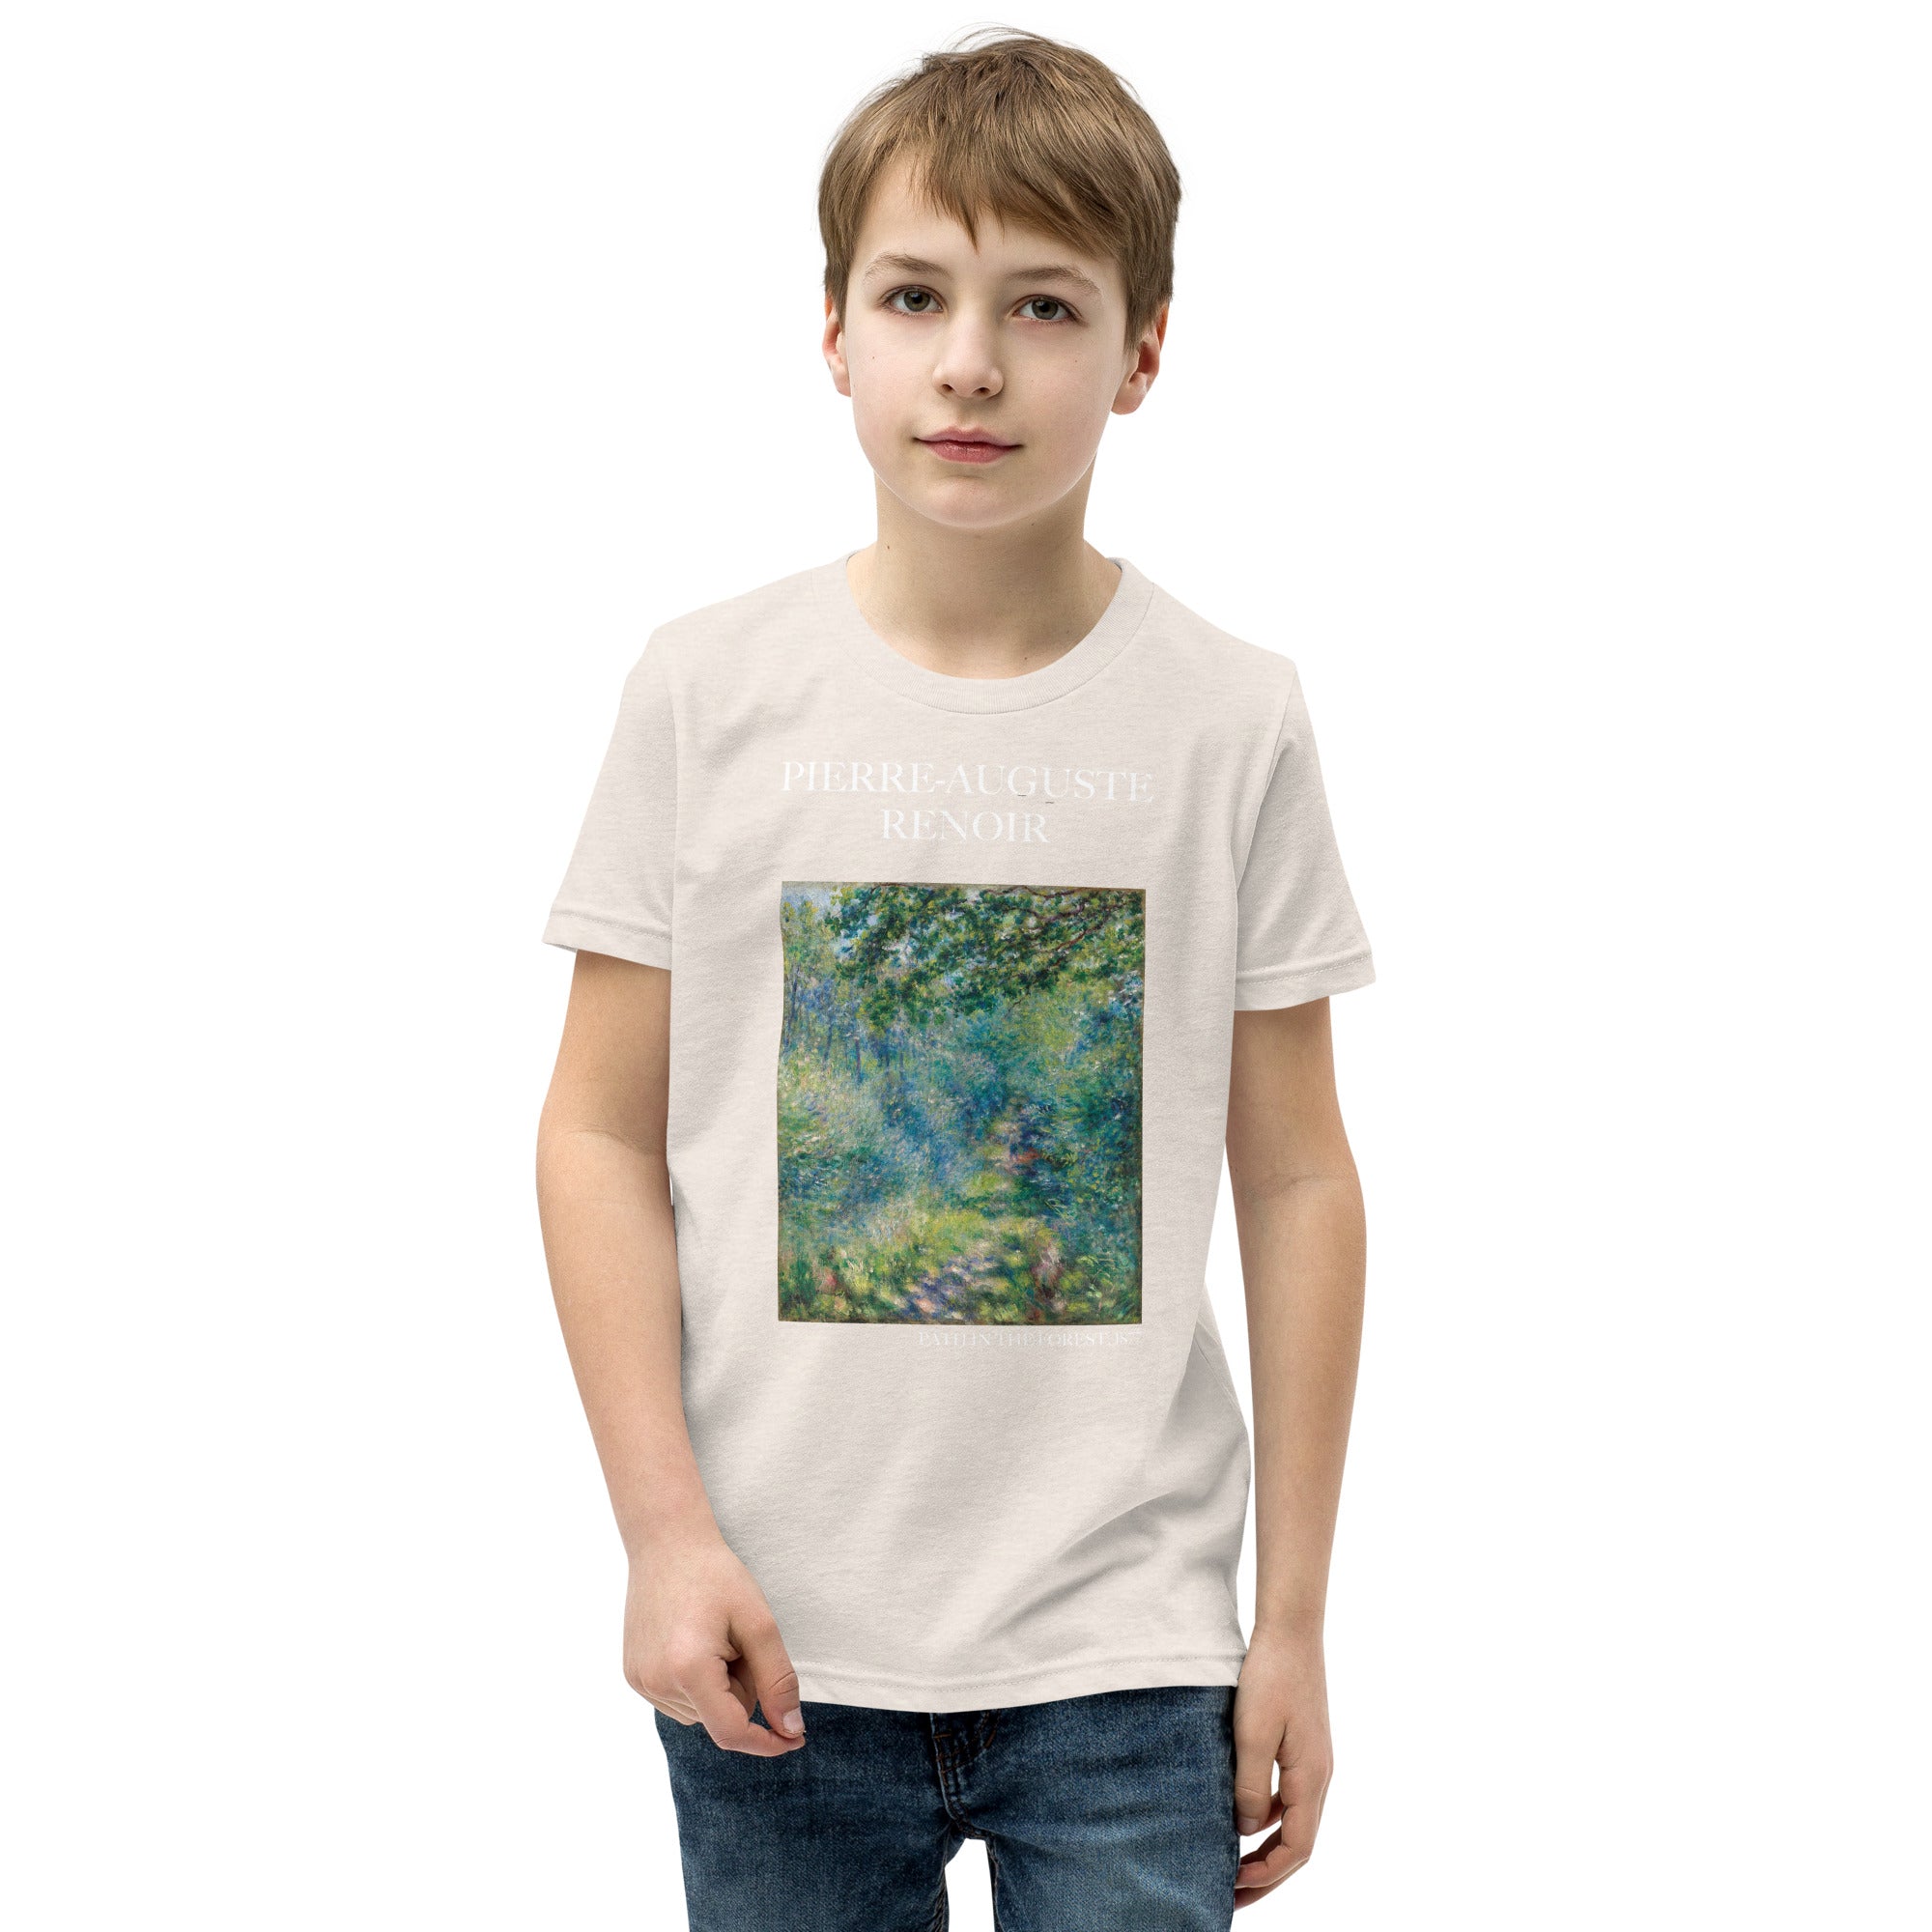 Pierre-Auguste Renoir - Kurzärmeliges T-Shirt „Weg im Wald“ – berühmtes Gemälde – Premium-Kunst-T-Shirt für Jugendliche